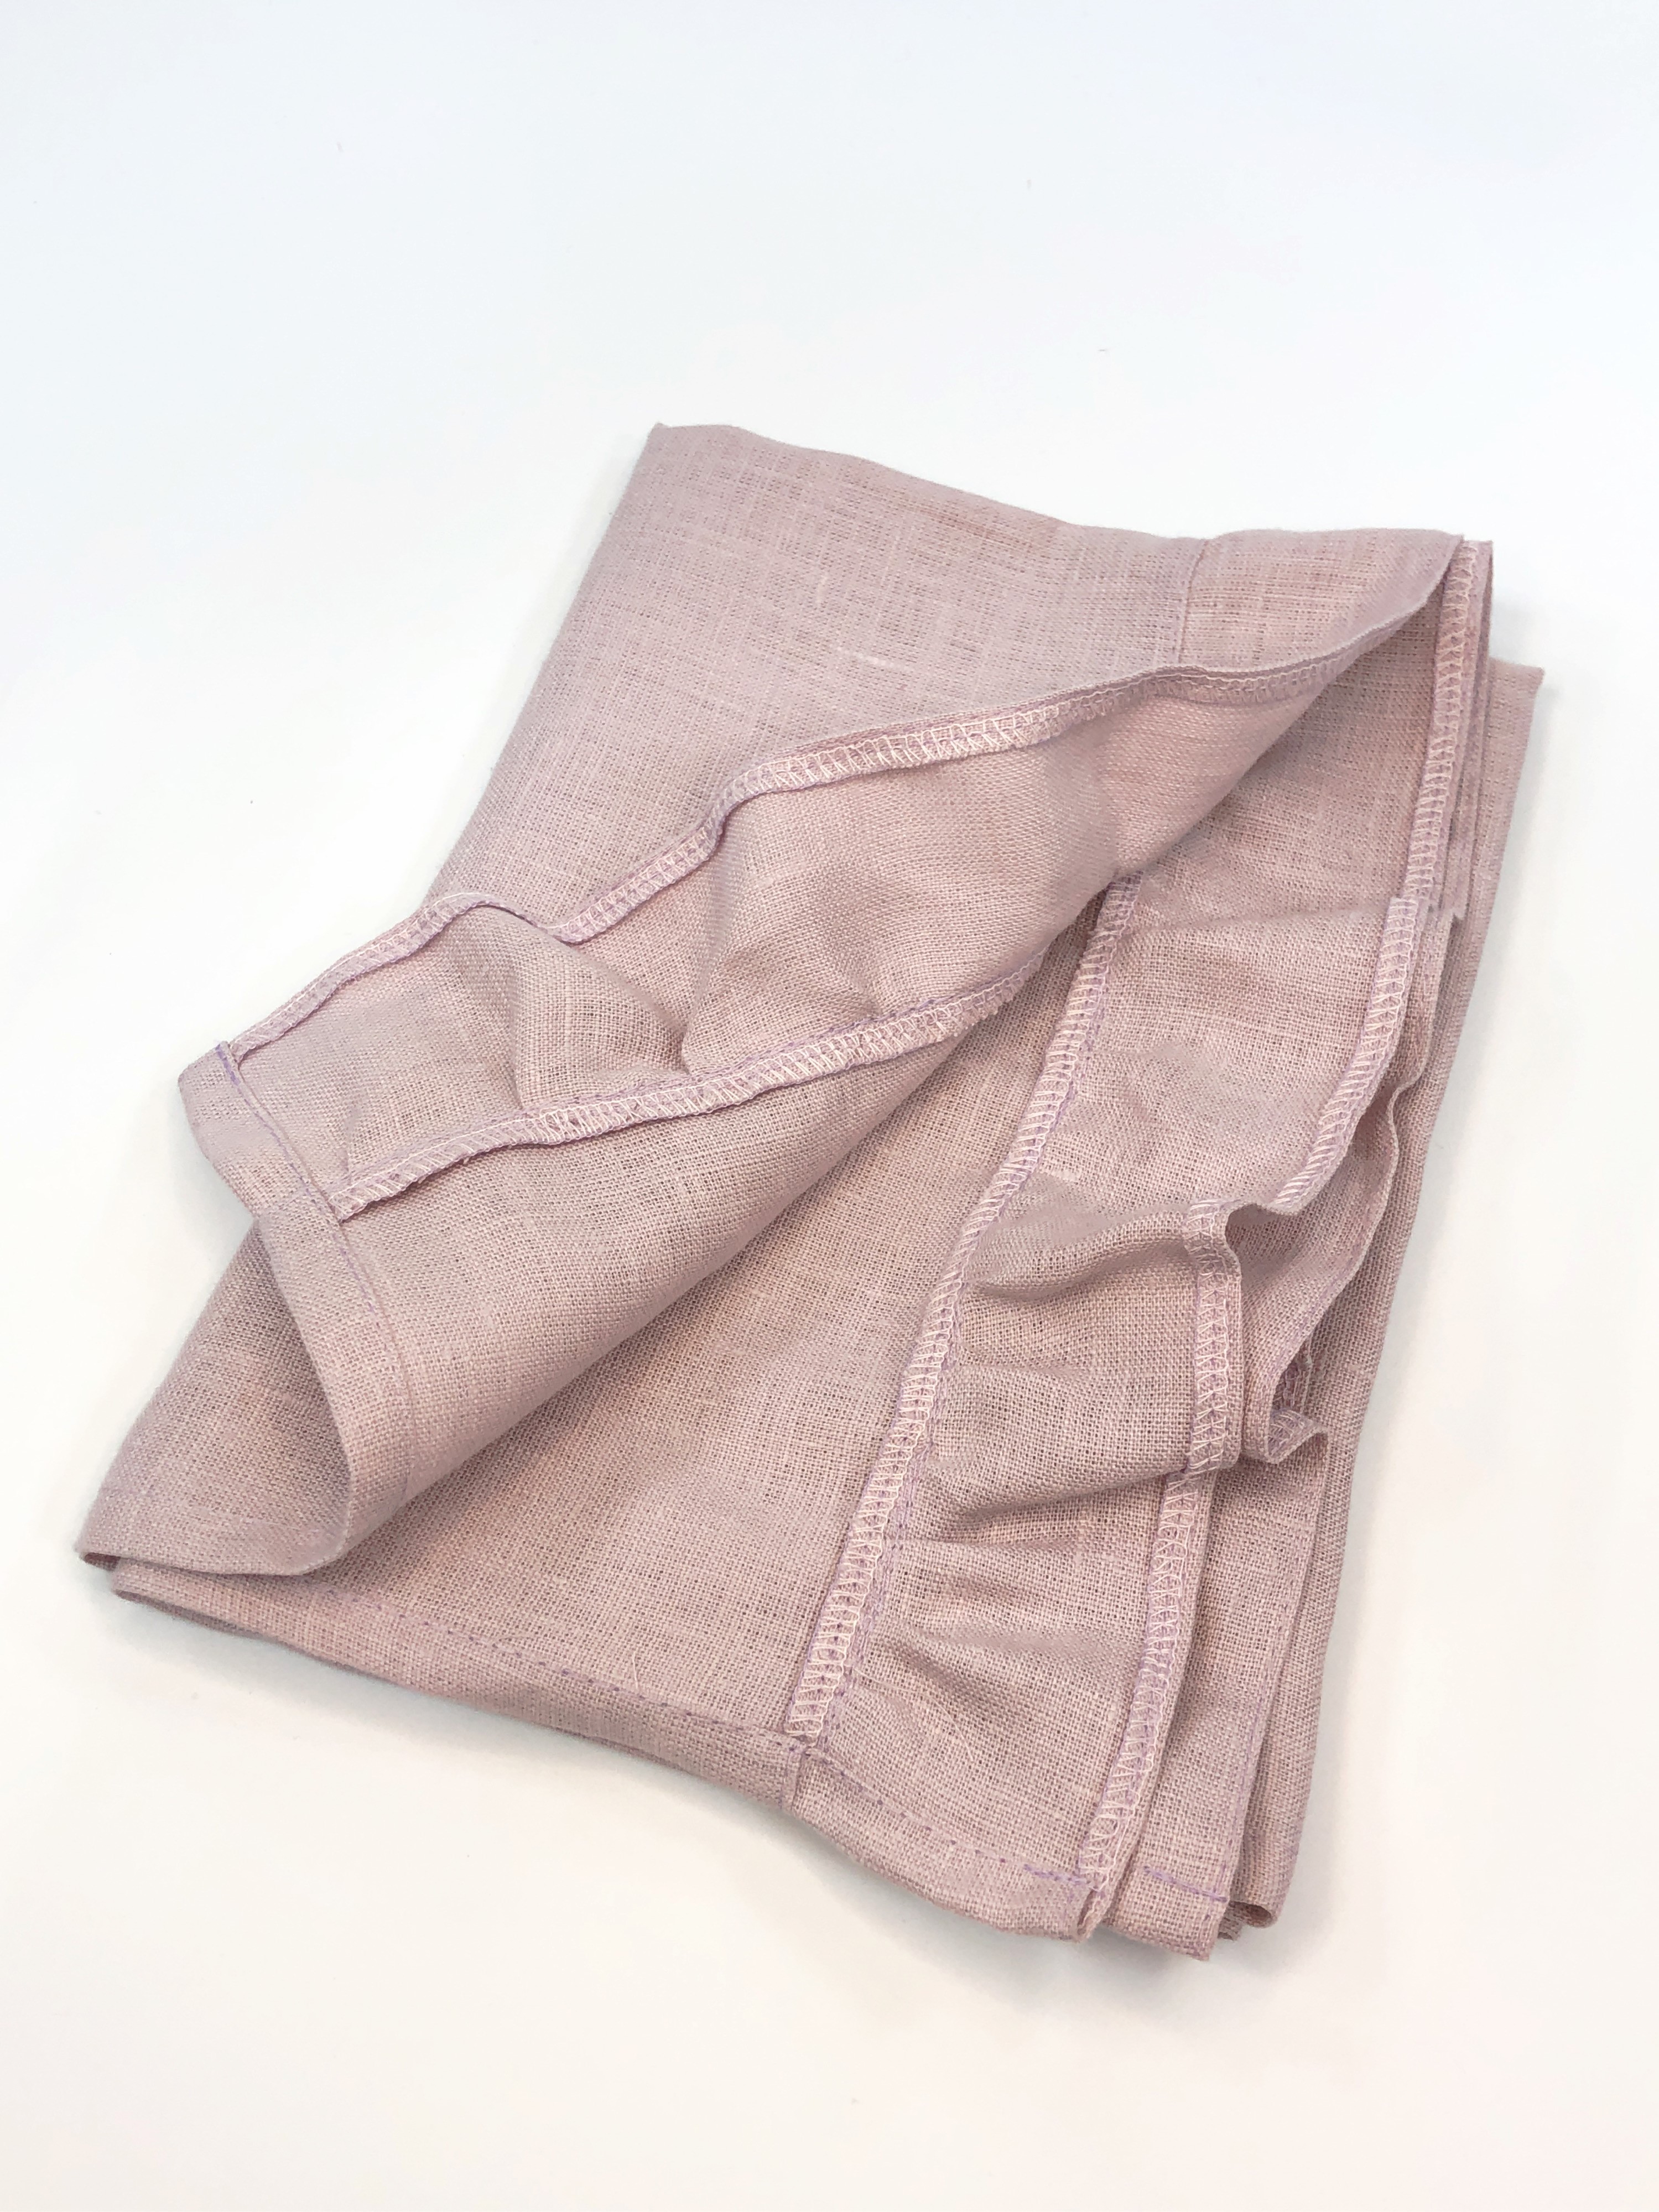 Полотенце льняное с рюшами 50х70см розового цвета 1шт фото 2